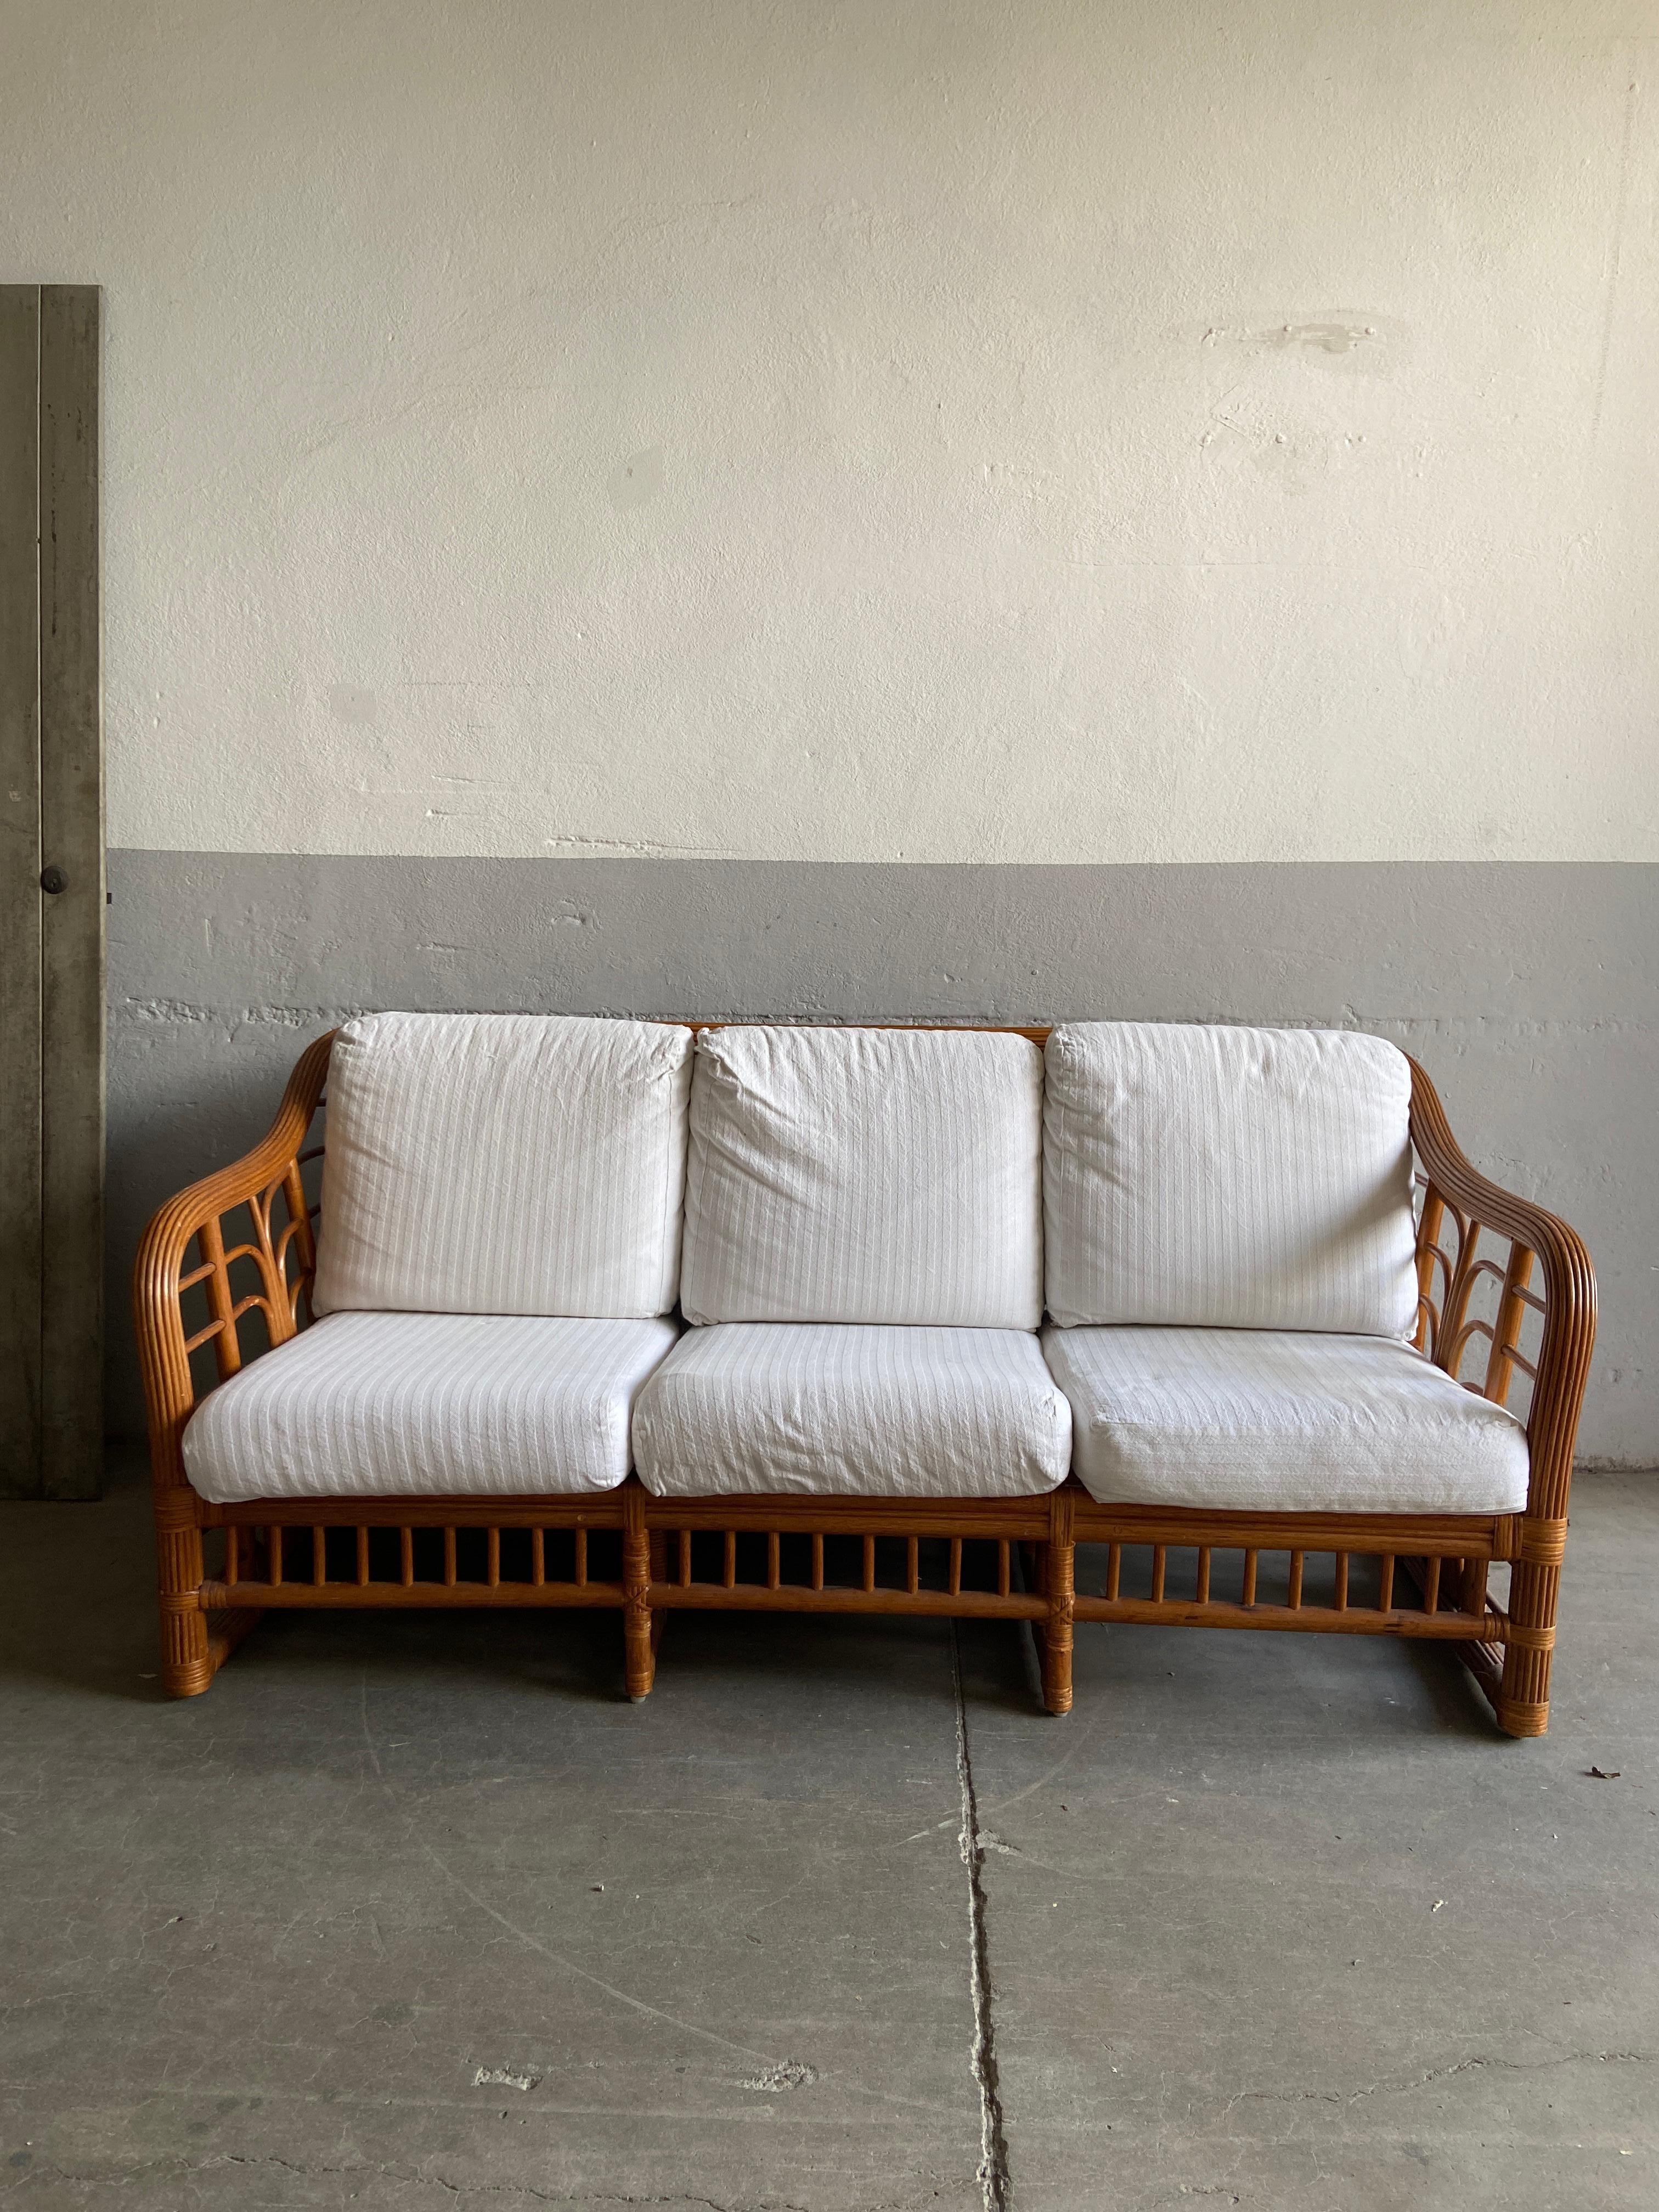 Canapé en bambou italien moderne du milieu du siècle avec ses coussins en coton d'origine par Vivai del Sud, 1970
Le canapé est en très bon état vintage, très stable et confortable. Les coussins sont de base de couleur blanche et peuvent être